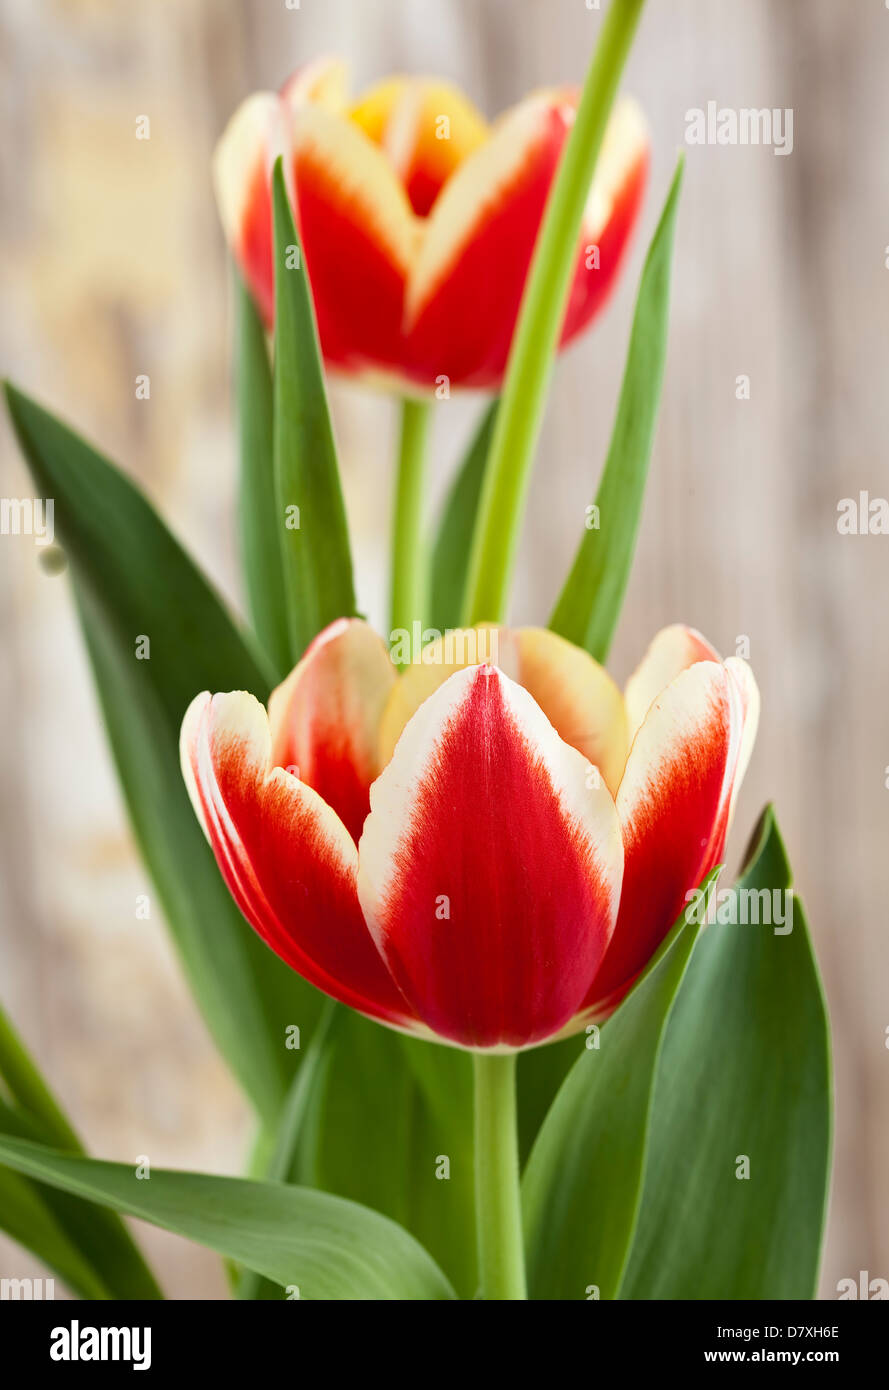 Portrait de tulipes rouges avec bords jaune contre un arrière-plan bois usé. Banque D'Images